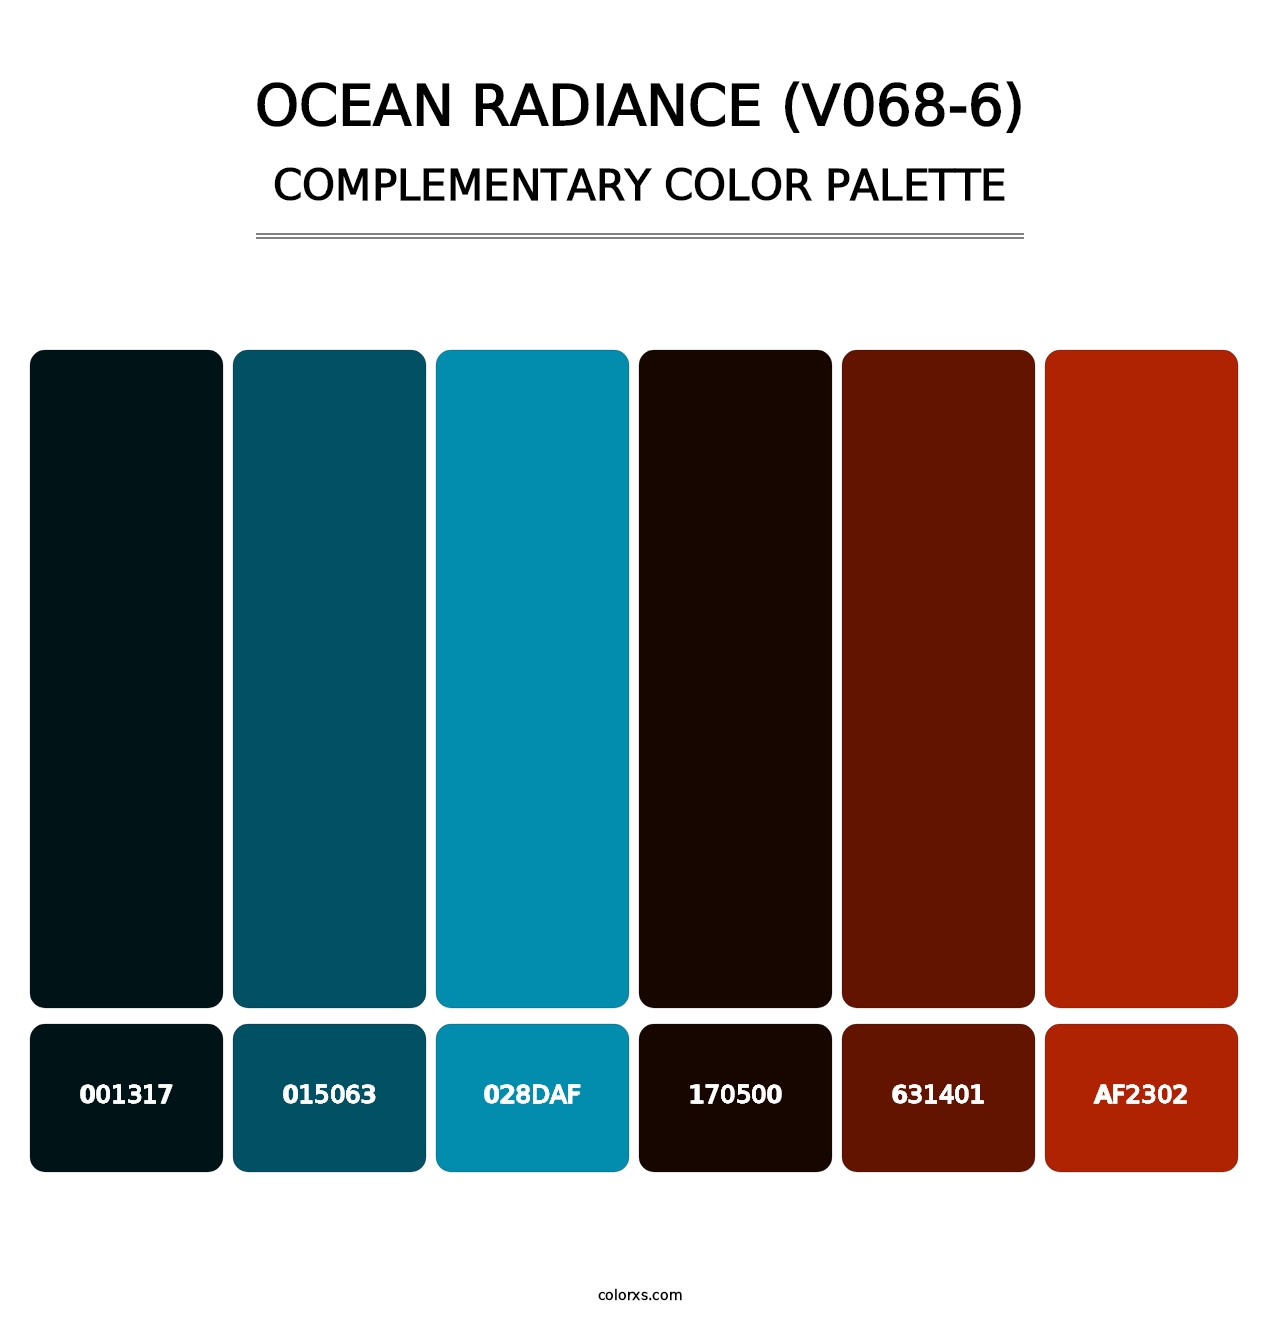 Ocean Radiance (V068-6) - Complementary Color Palette